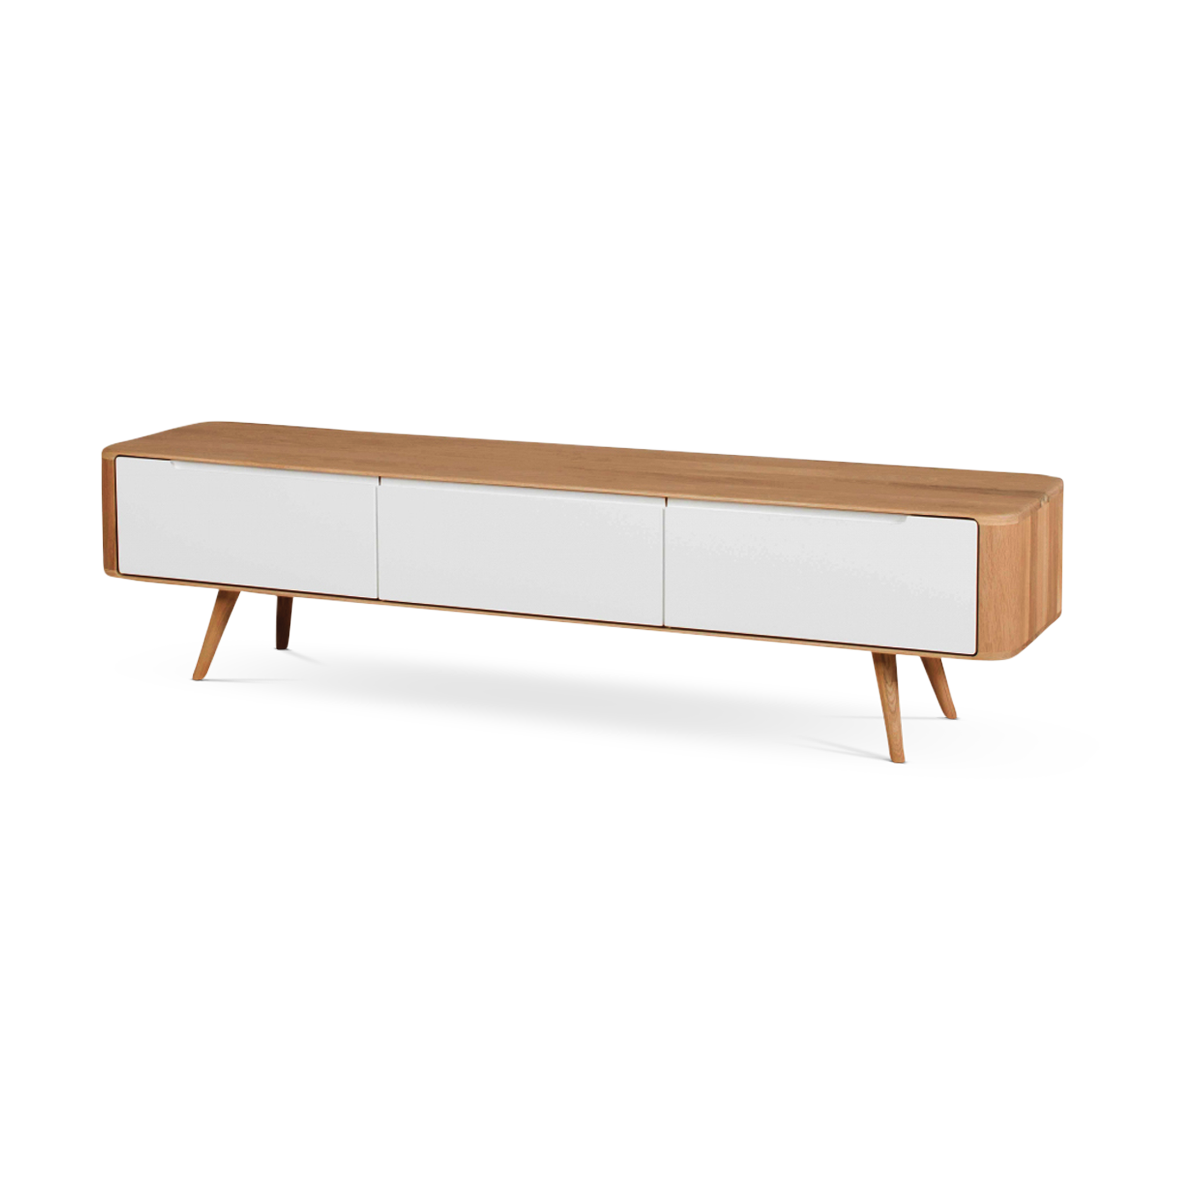 lowboard houten tv meubel naturel - 180 x 55 cm Gewoonstijl